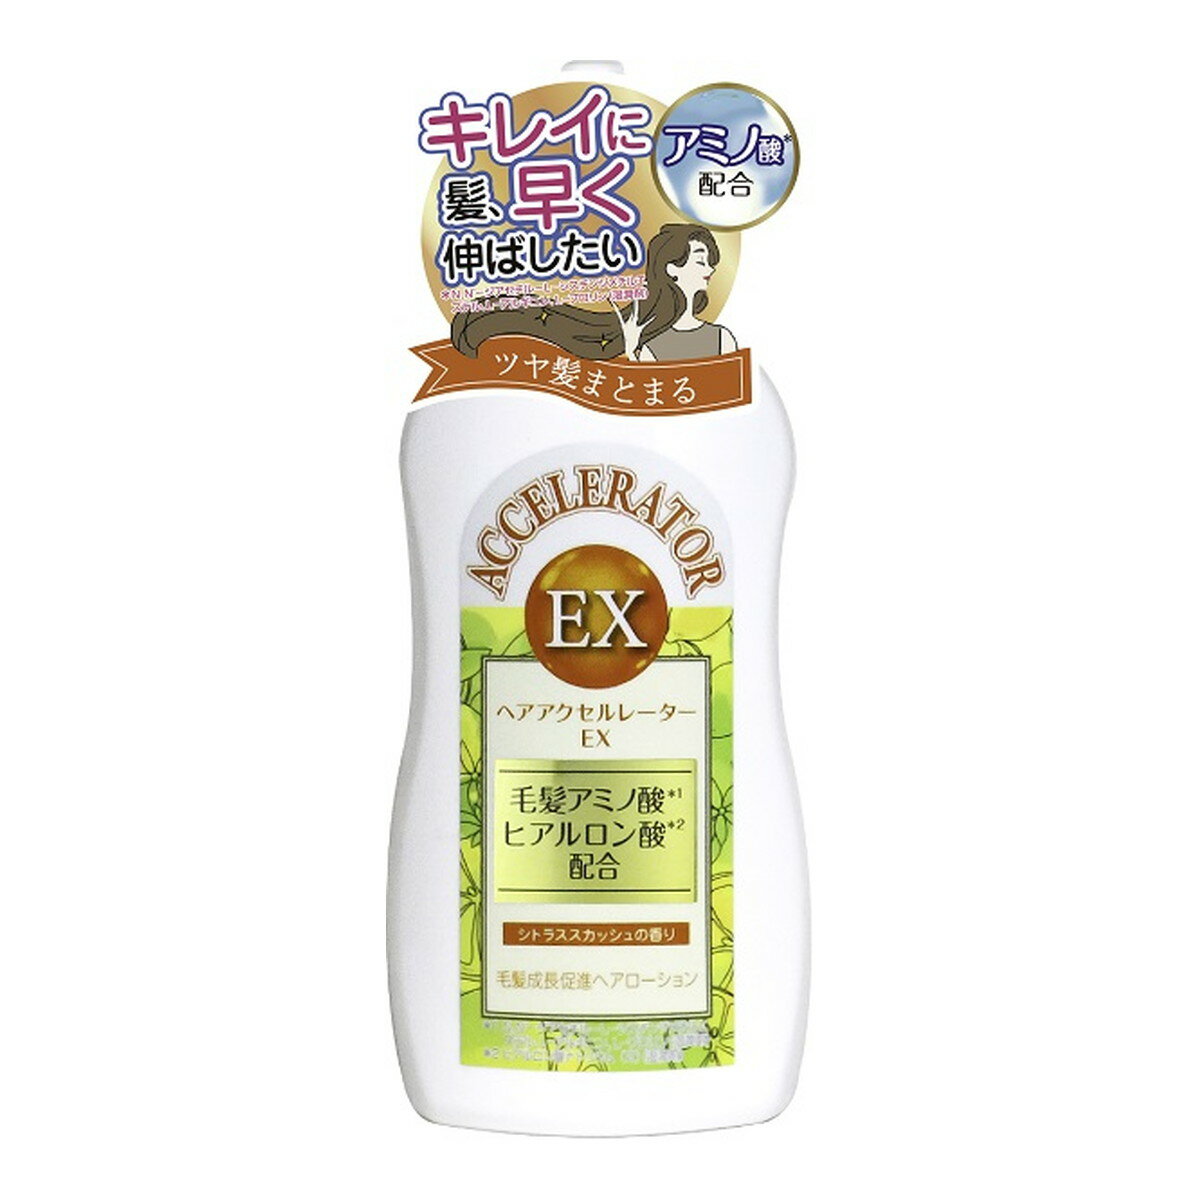 【送料込】 加美乃素本舗 ヘアアクセルレーターEX シトラススカッシュの香り 150ml 1個